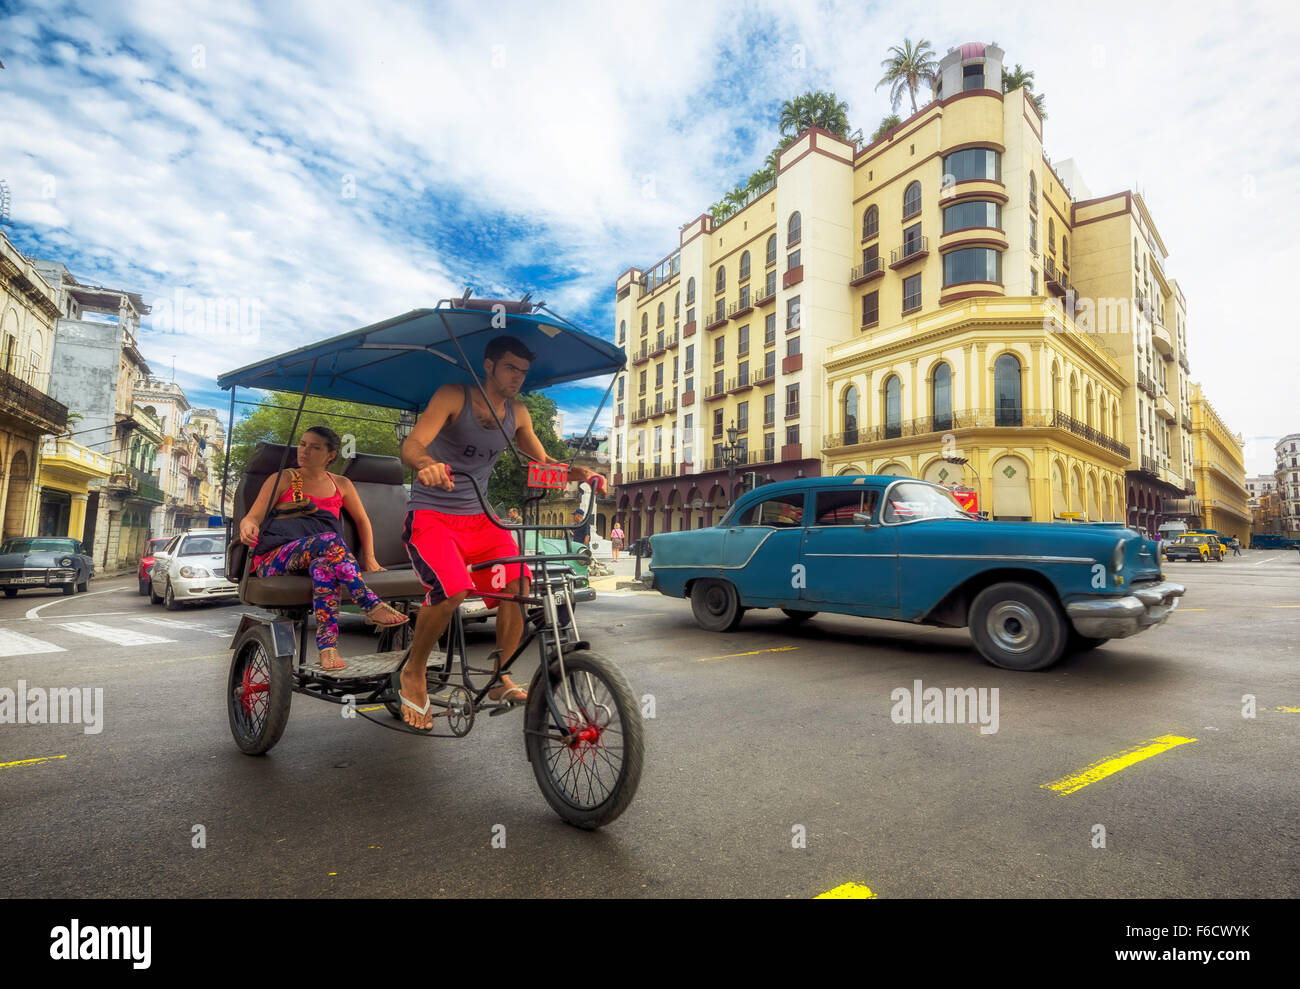 Oldtimer im Straßenbild, Rikscha, Leute Taxi auf der Straße die Kreuzung in der Nähe von Hotel Telegrafo, La Habana, Havana Stockfoto